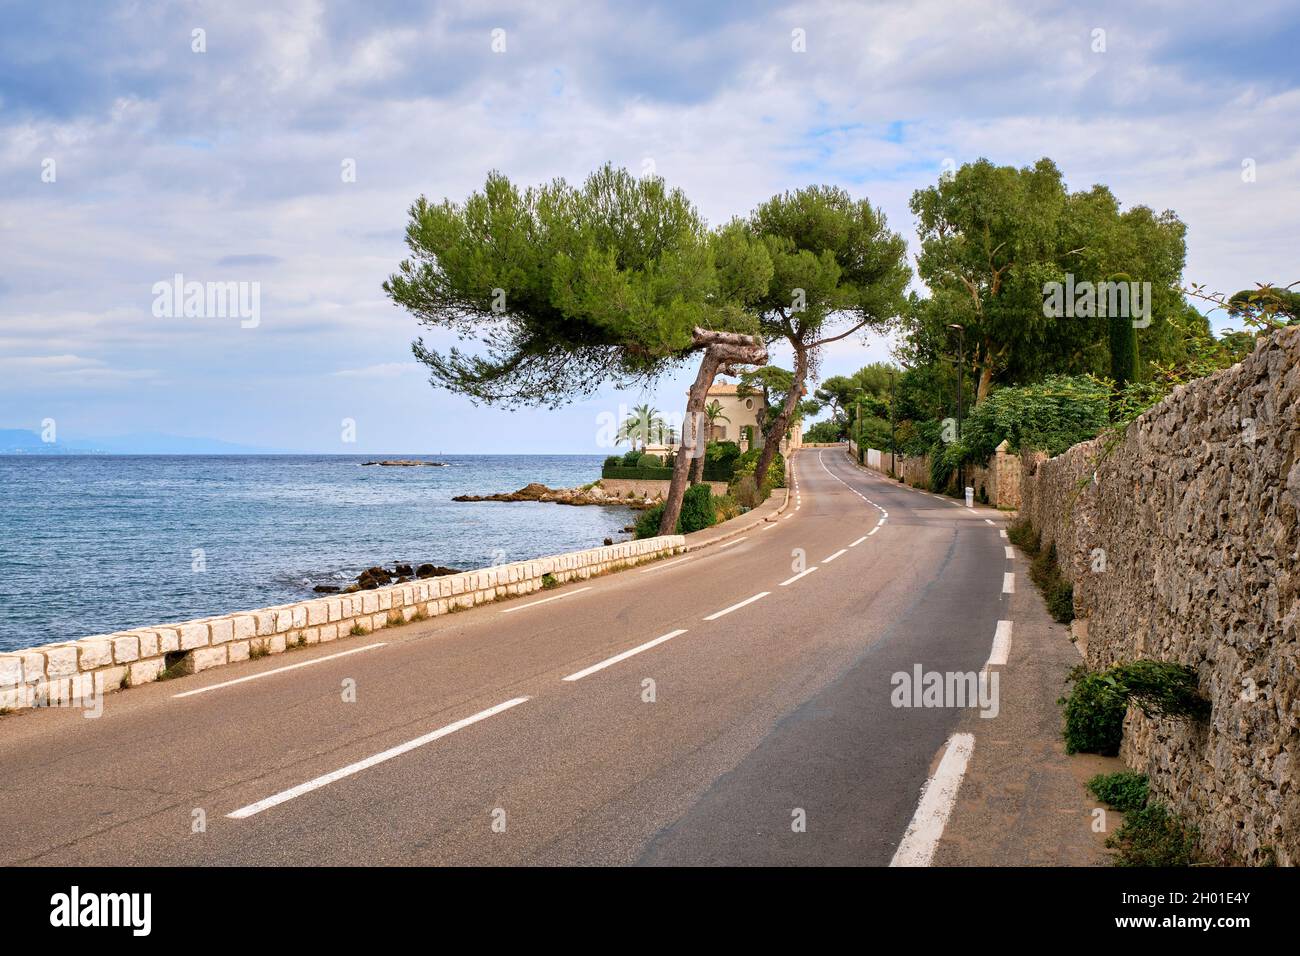 Une route étroite courbe serpente le long de la rive de la Méditerranée sur la Côte d'Azur, Antibes France. Banque D'Images